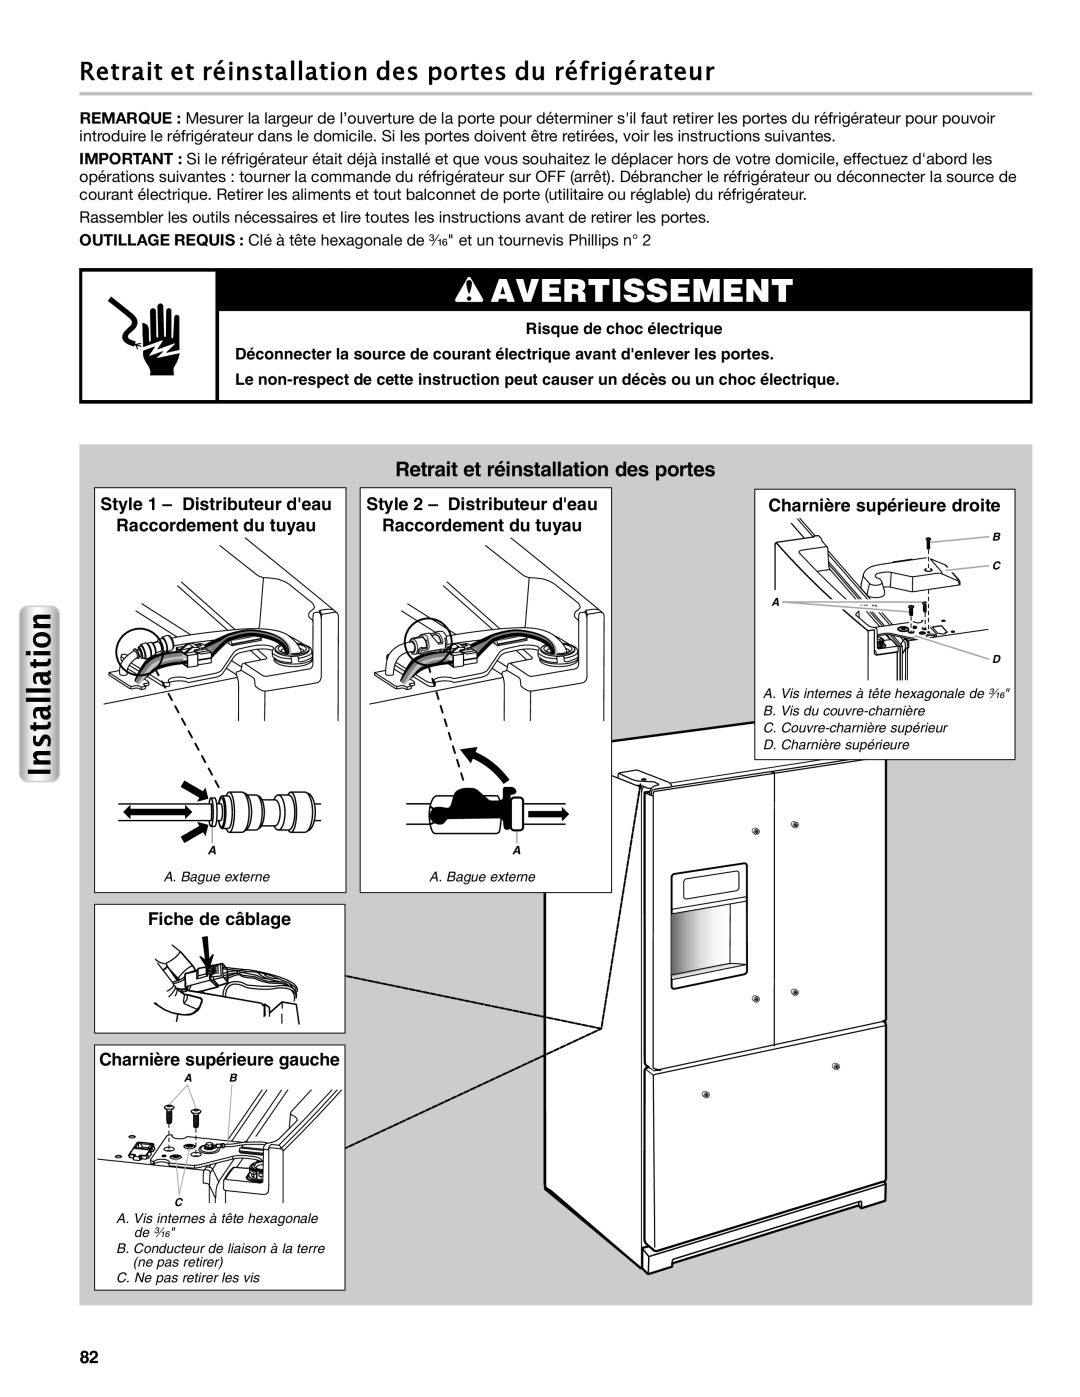 Maytag W10558104A manual Retrait et réinstallation des portes du réfrigérateur, Style 1 - Distributeur deau, Avertissement 